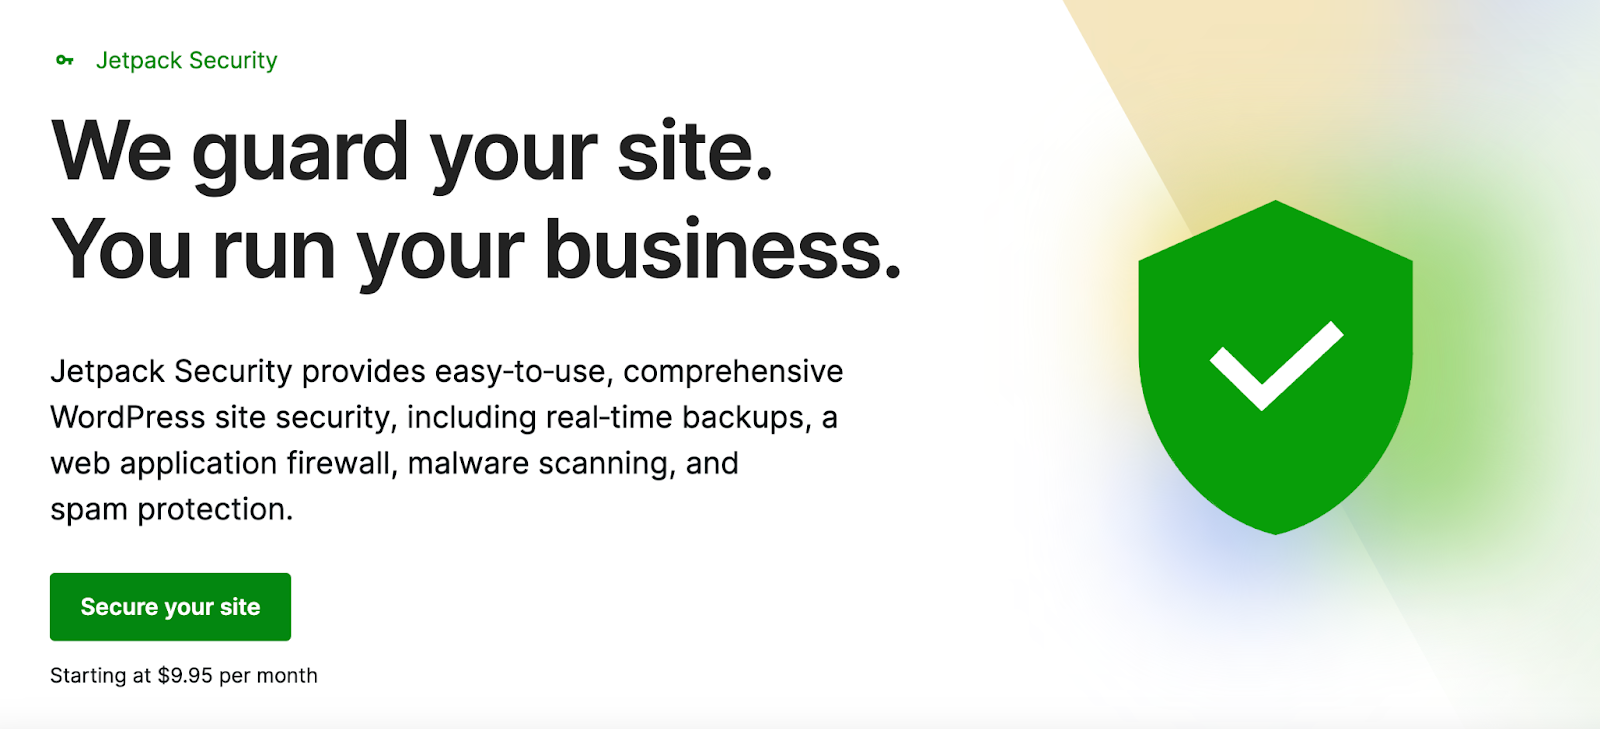 يوفر JetPack Security حماية شاملة لموقع WordPress الخاص بك ، ويشمل النسخ الاحتياطية في الوقت الفعلي ، ومسح البرامج الضارة ، وحماية البريد العشوائي ، وأكثر من ذلك.